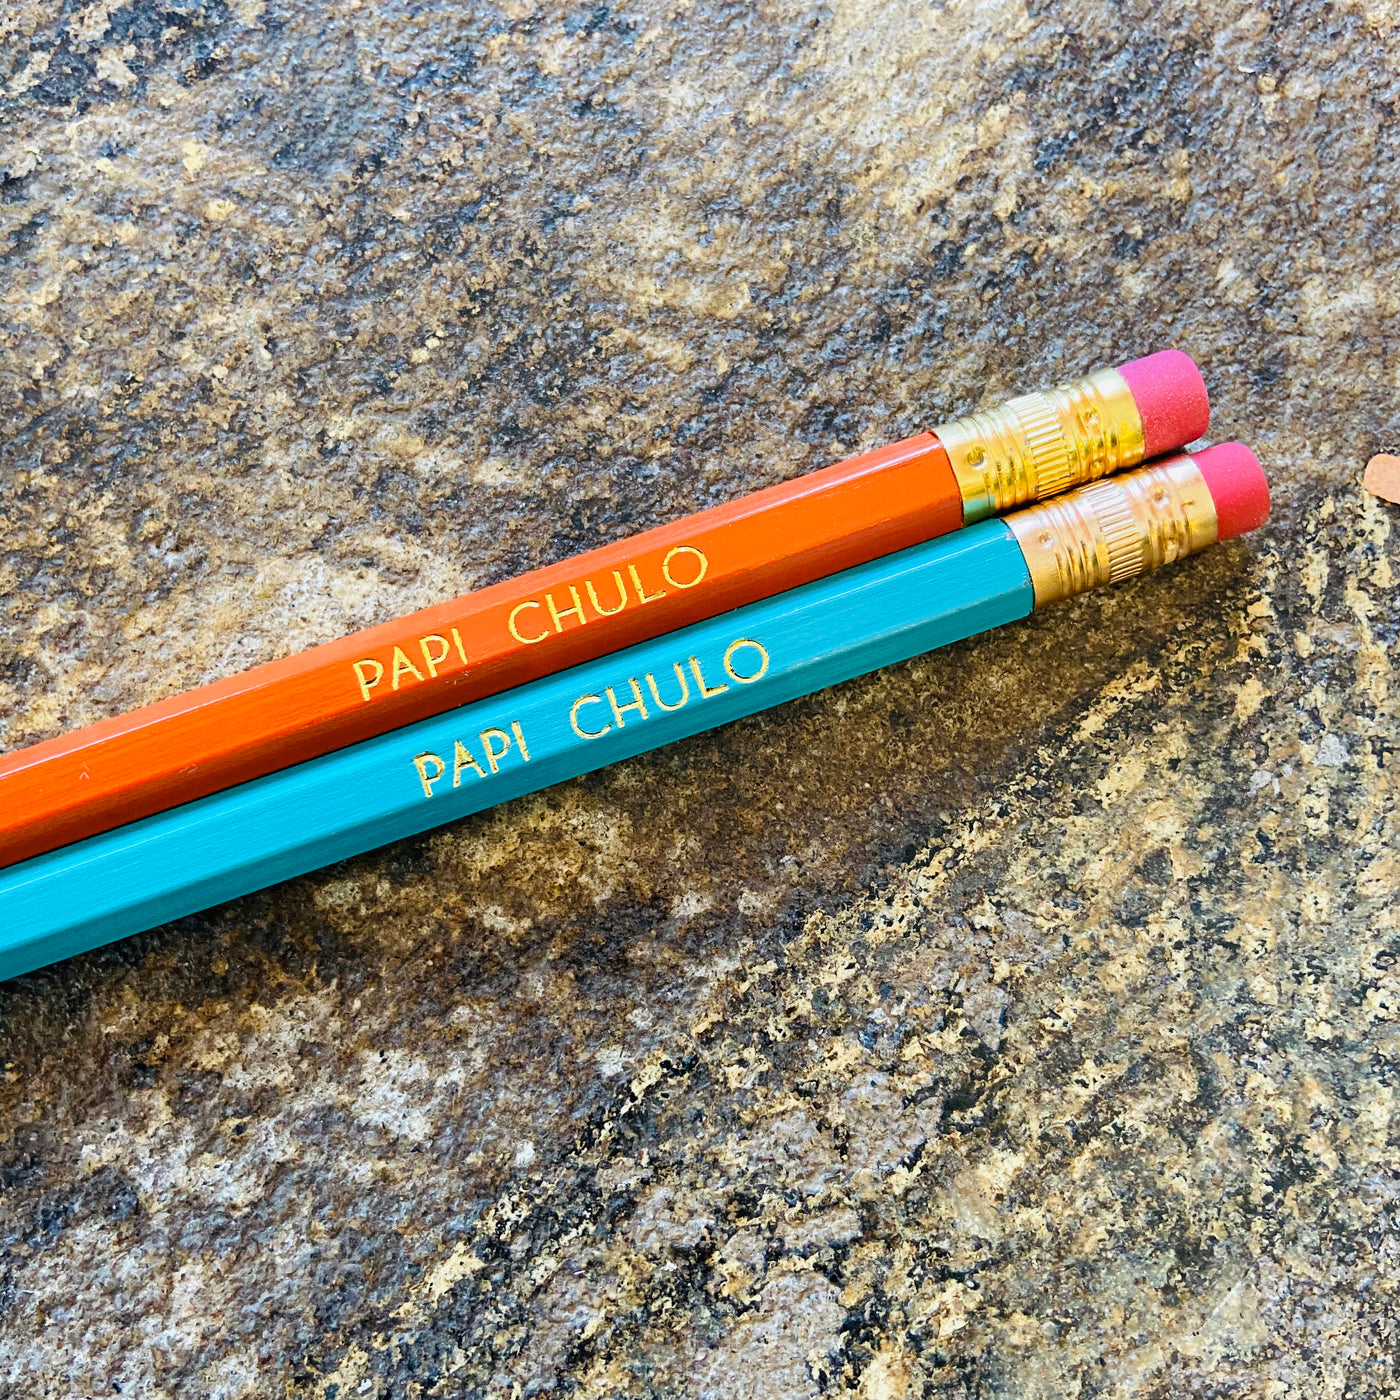 Papi Chulo phrase pencils in orange and blue.